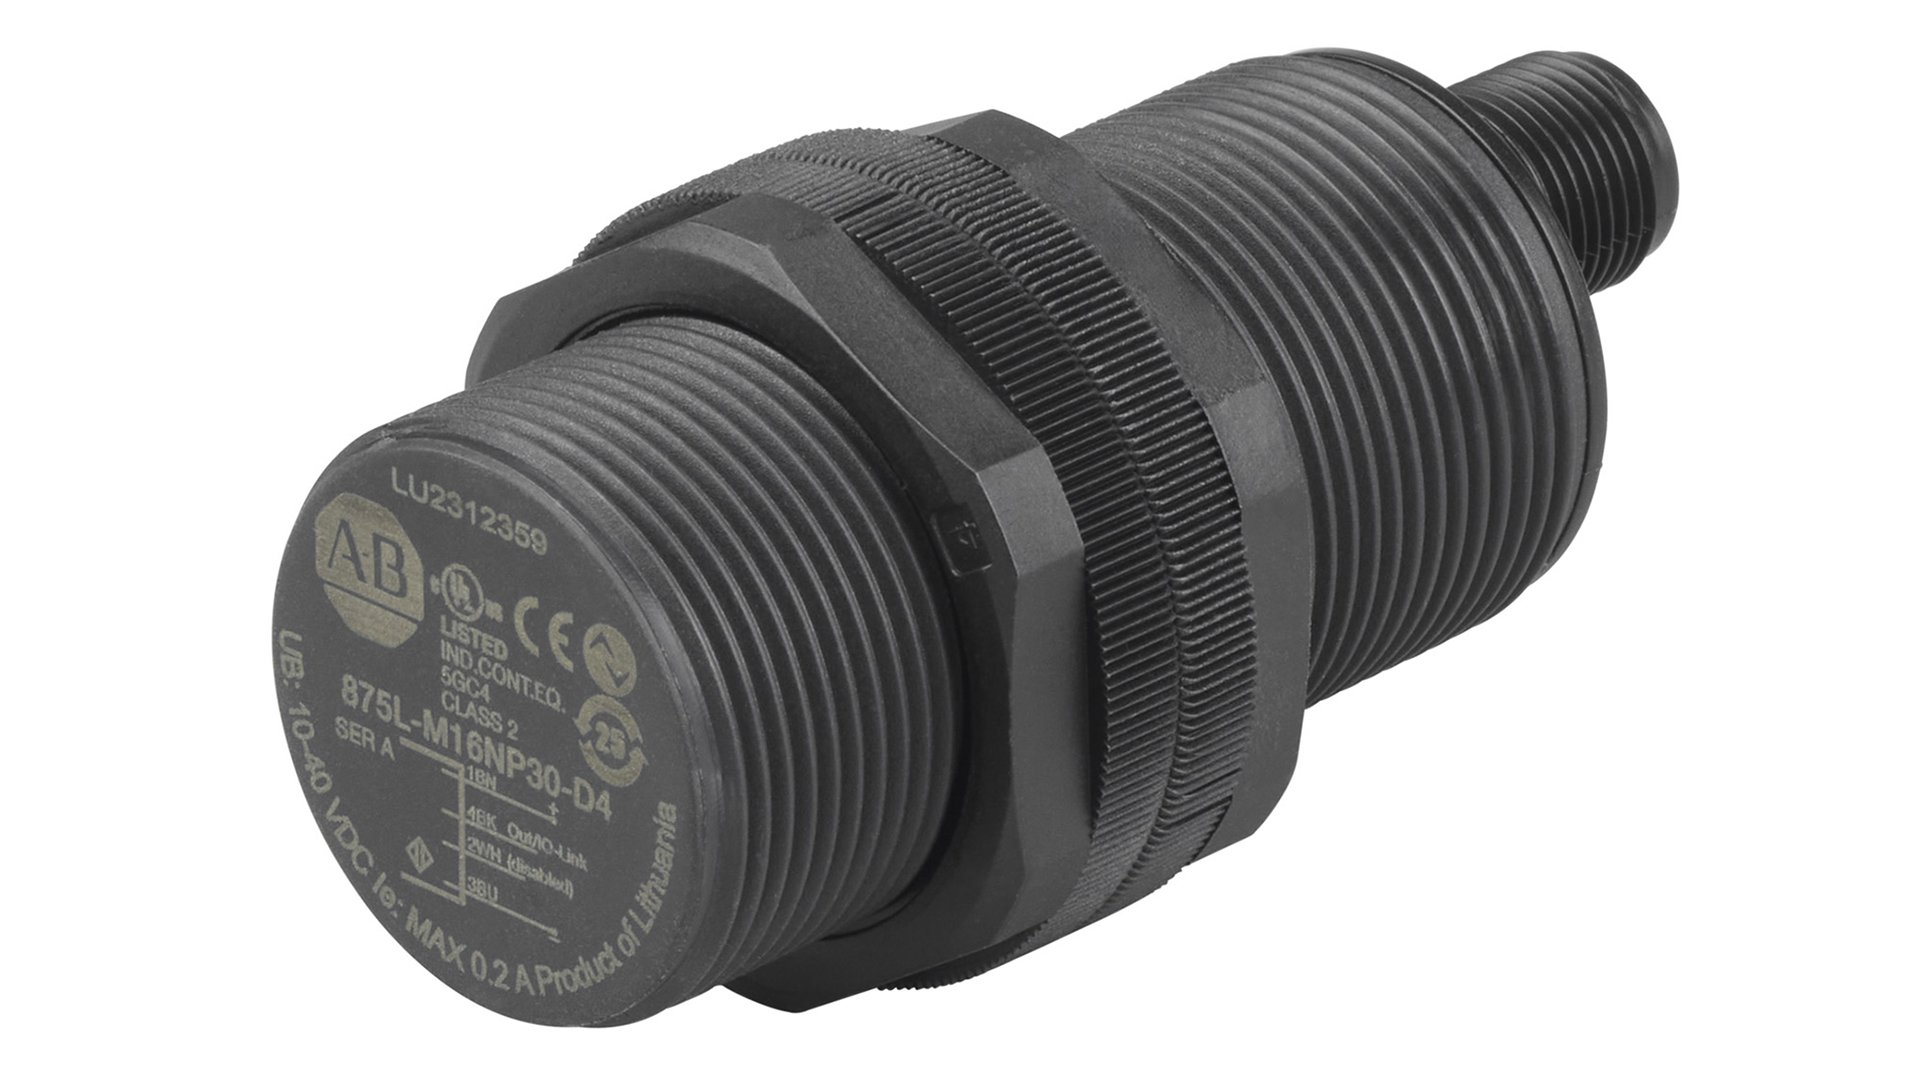 Sensore capacitivo cilindrico nero con diametro cilindro di 30 mm e connettore a sgancio rapido micro CC